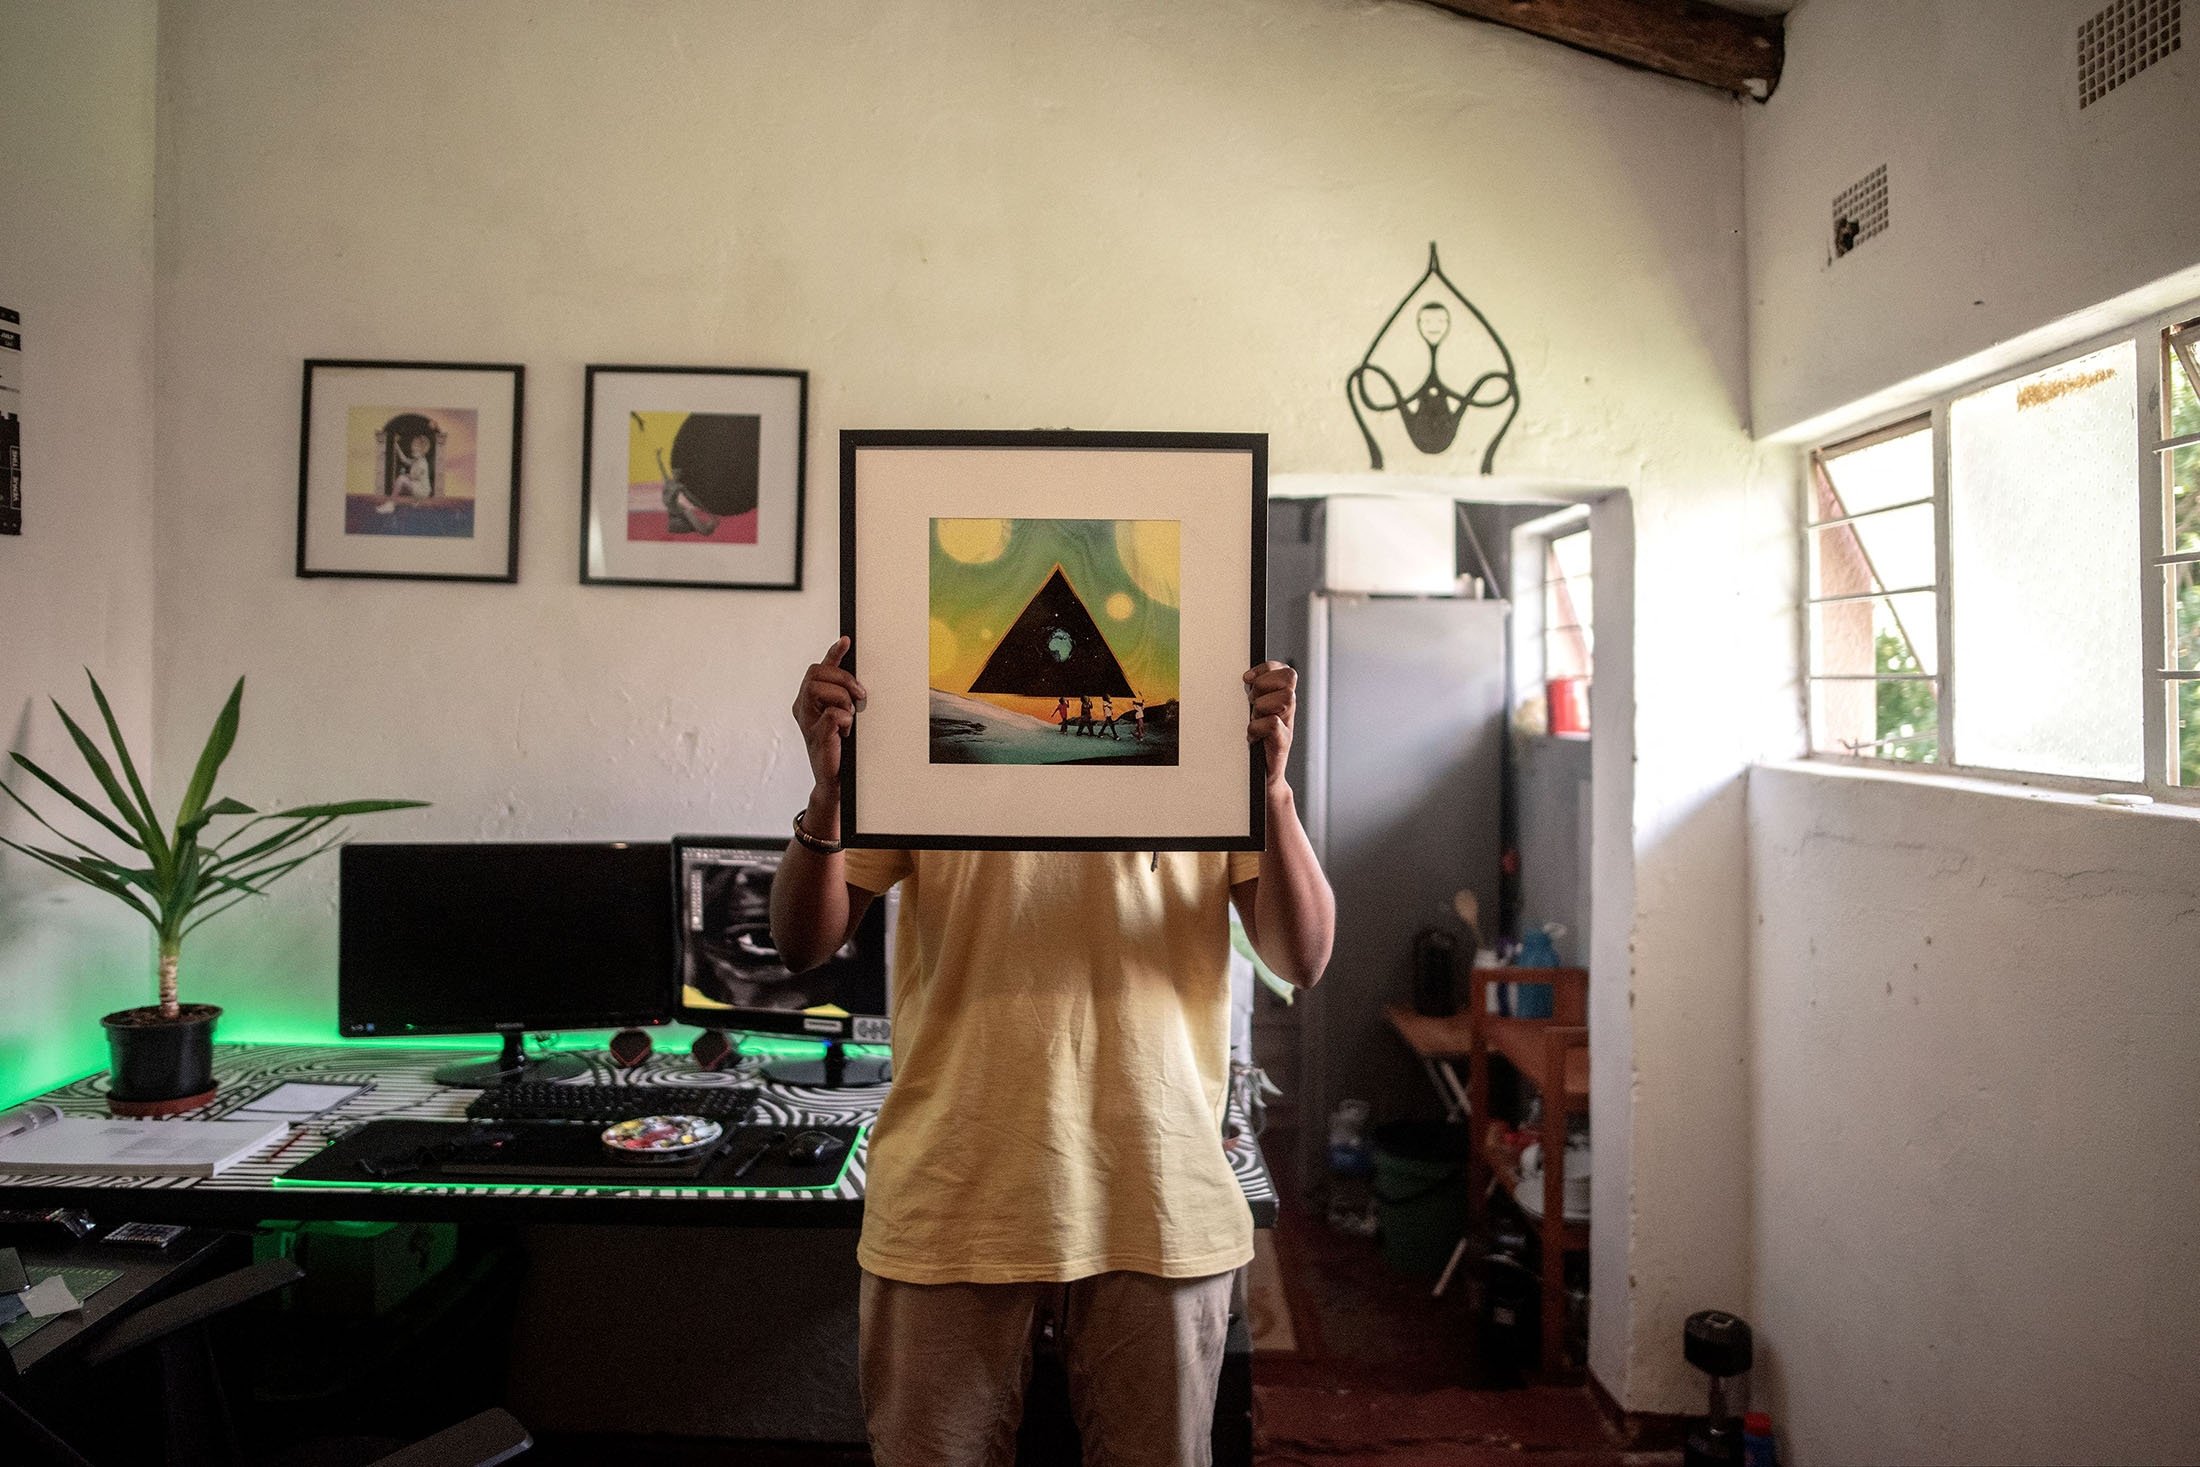 Seniman visual vonMash berpose untuk potret di studionya saat ia menutupi wajahnya dengan karya seni yang dibuat oleh DJ Black Coffee yang terkenal di dunia, di Springs, Afrika Selatan, 7 Februari 2022. (AFP Photo)